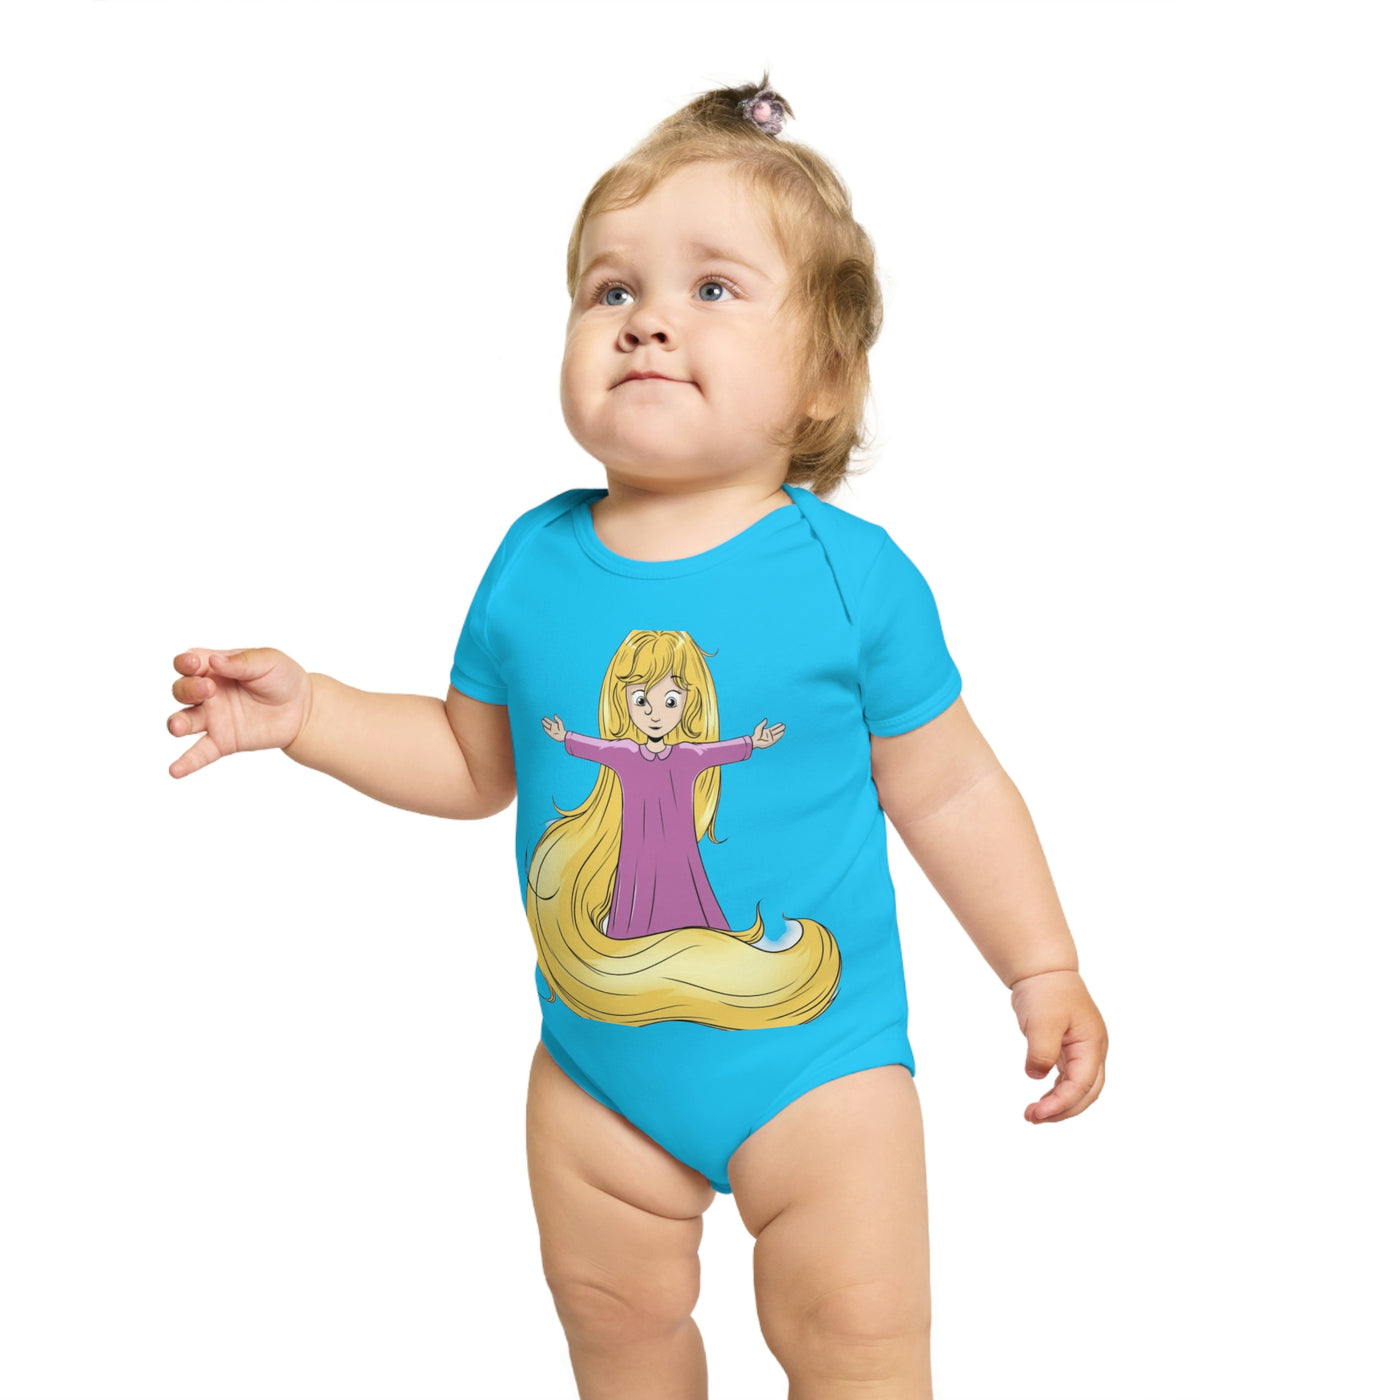 Baby Light Goddess Short Sleeve Baby Bodysuit